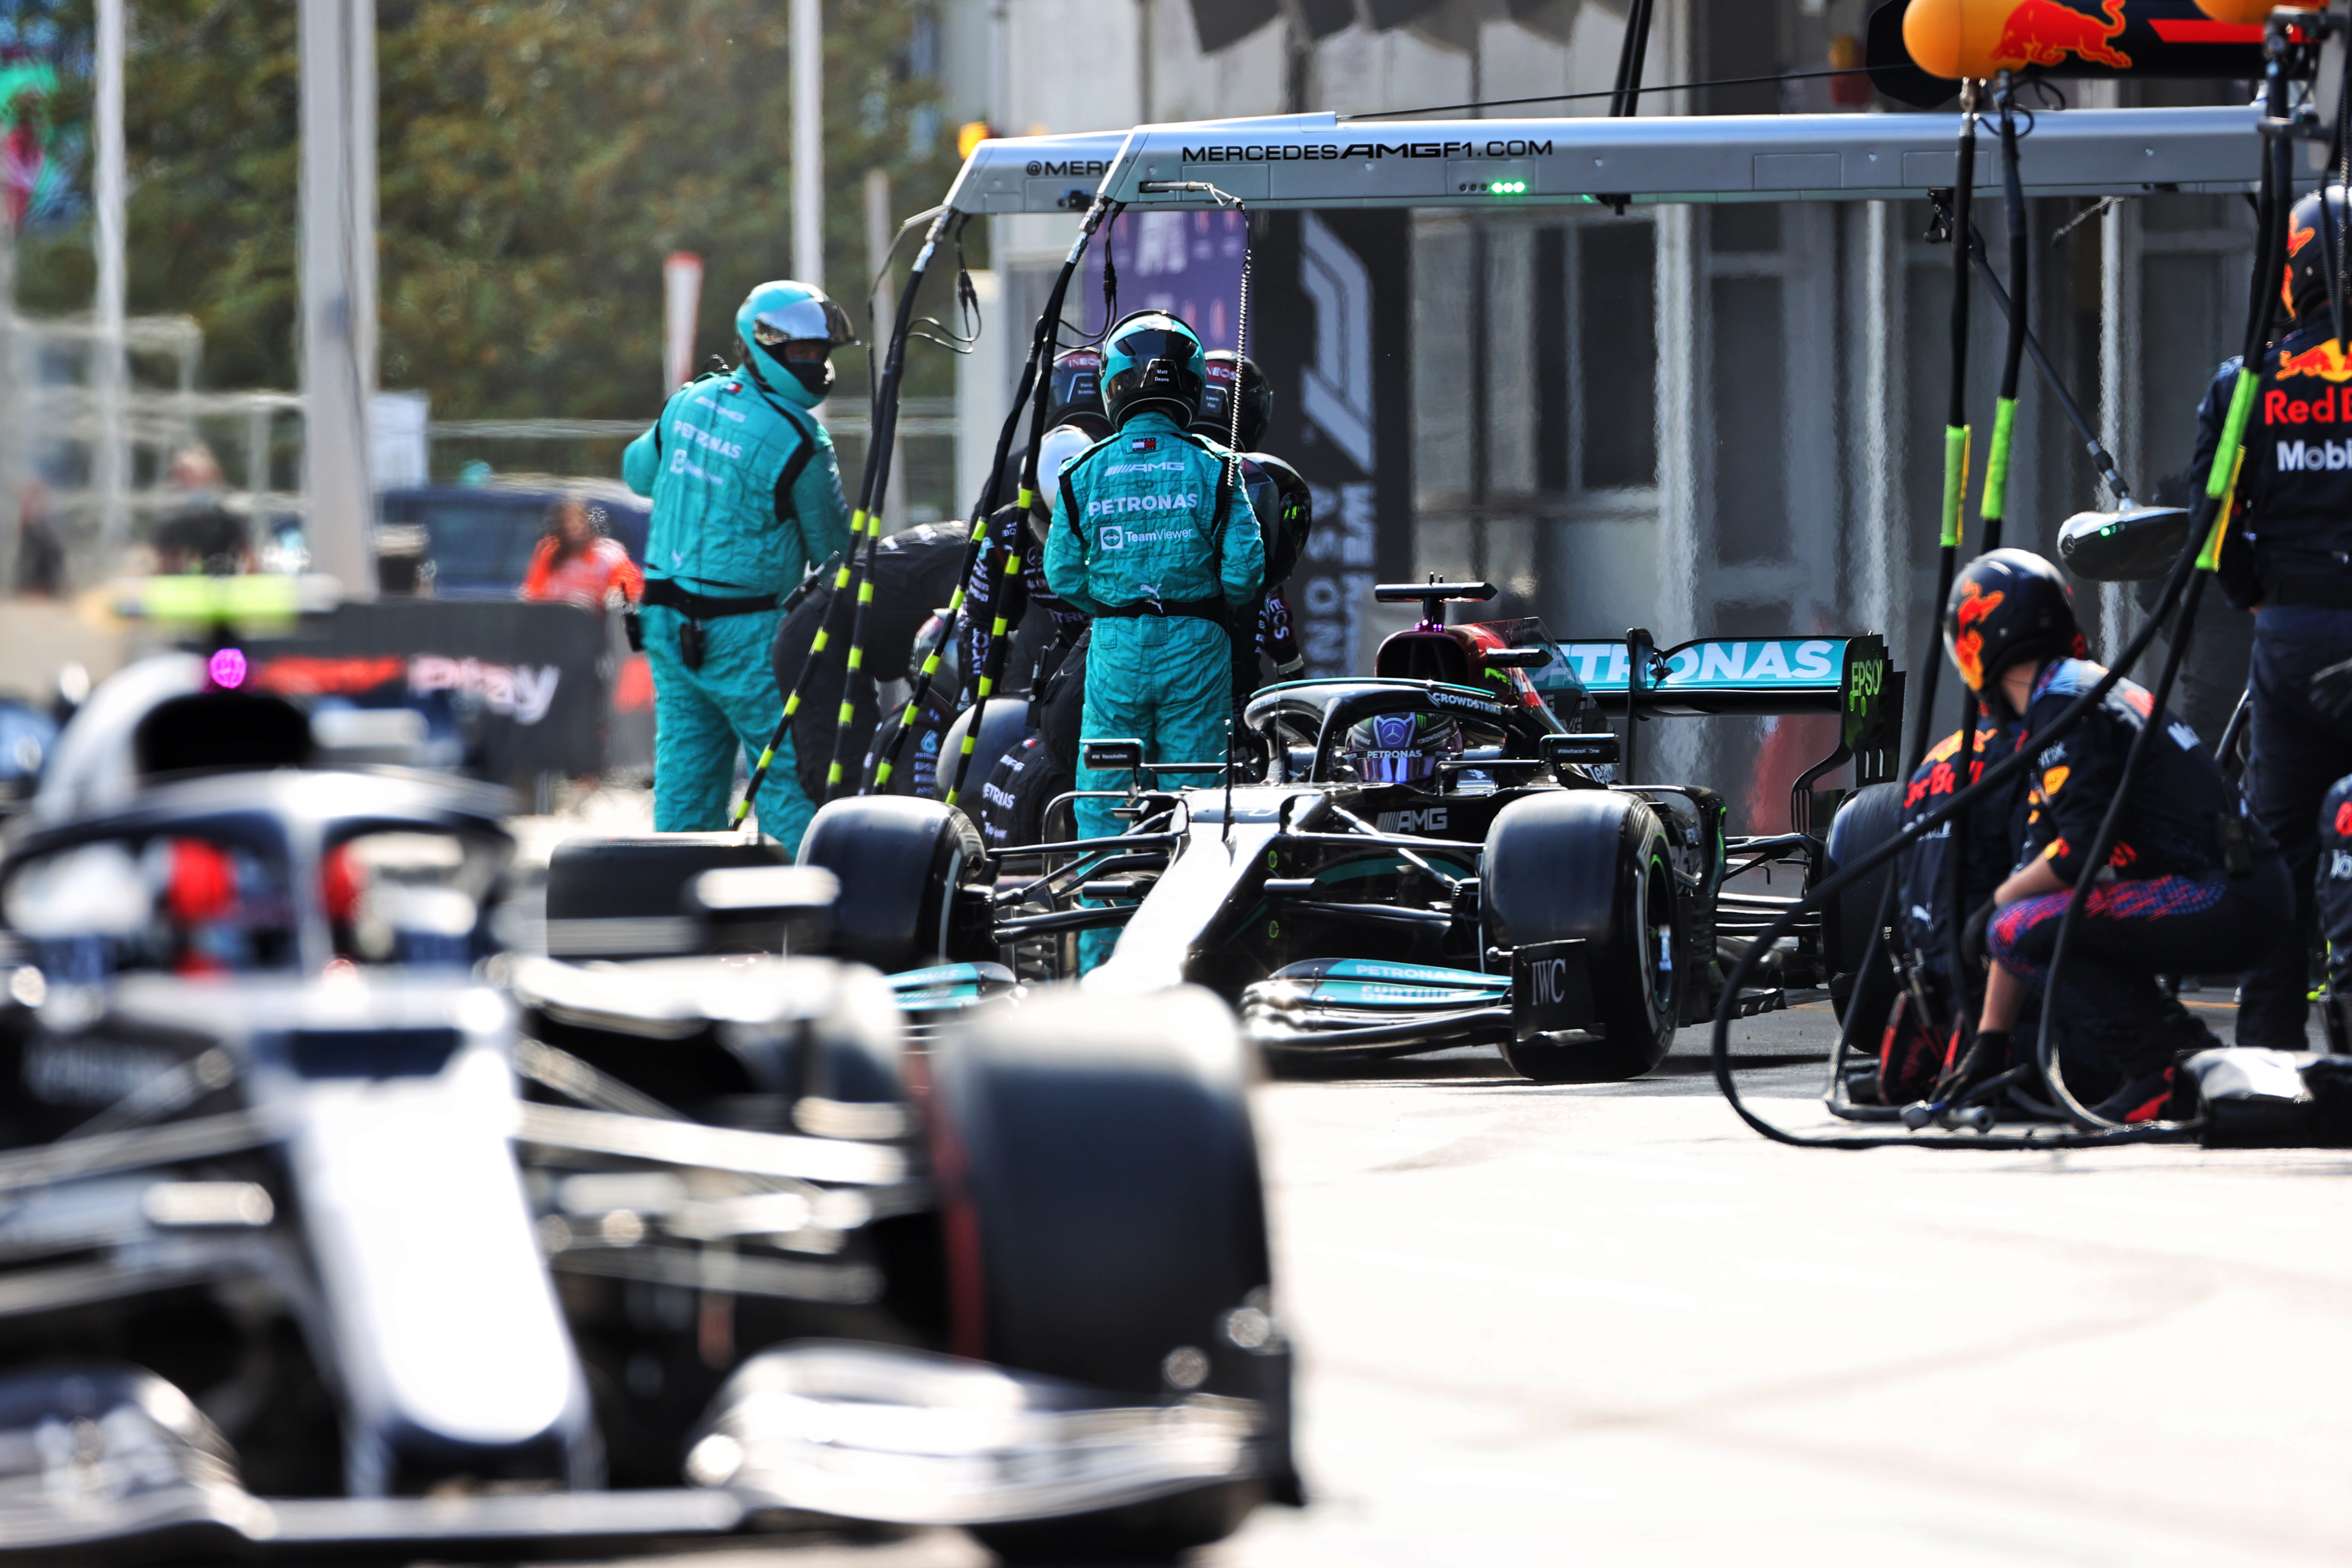 Lewis Hamilton Mercedes Azerbaijan Grand Prix 2021 pitstop